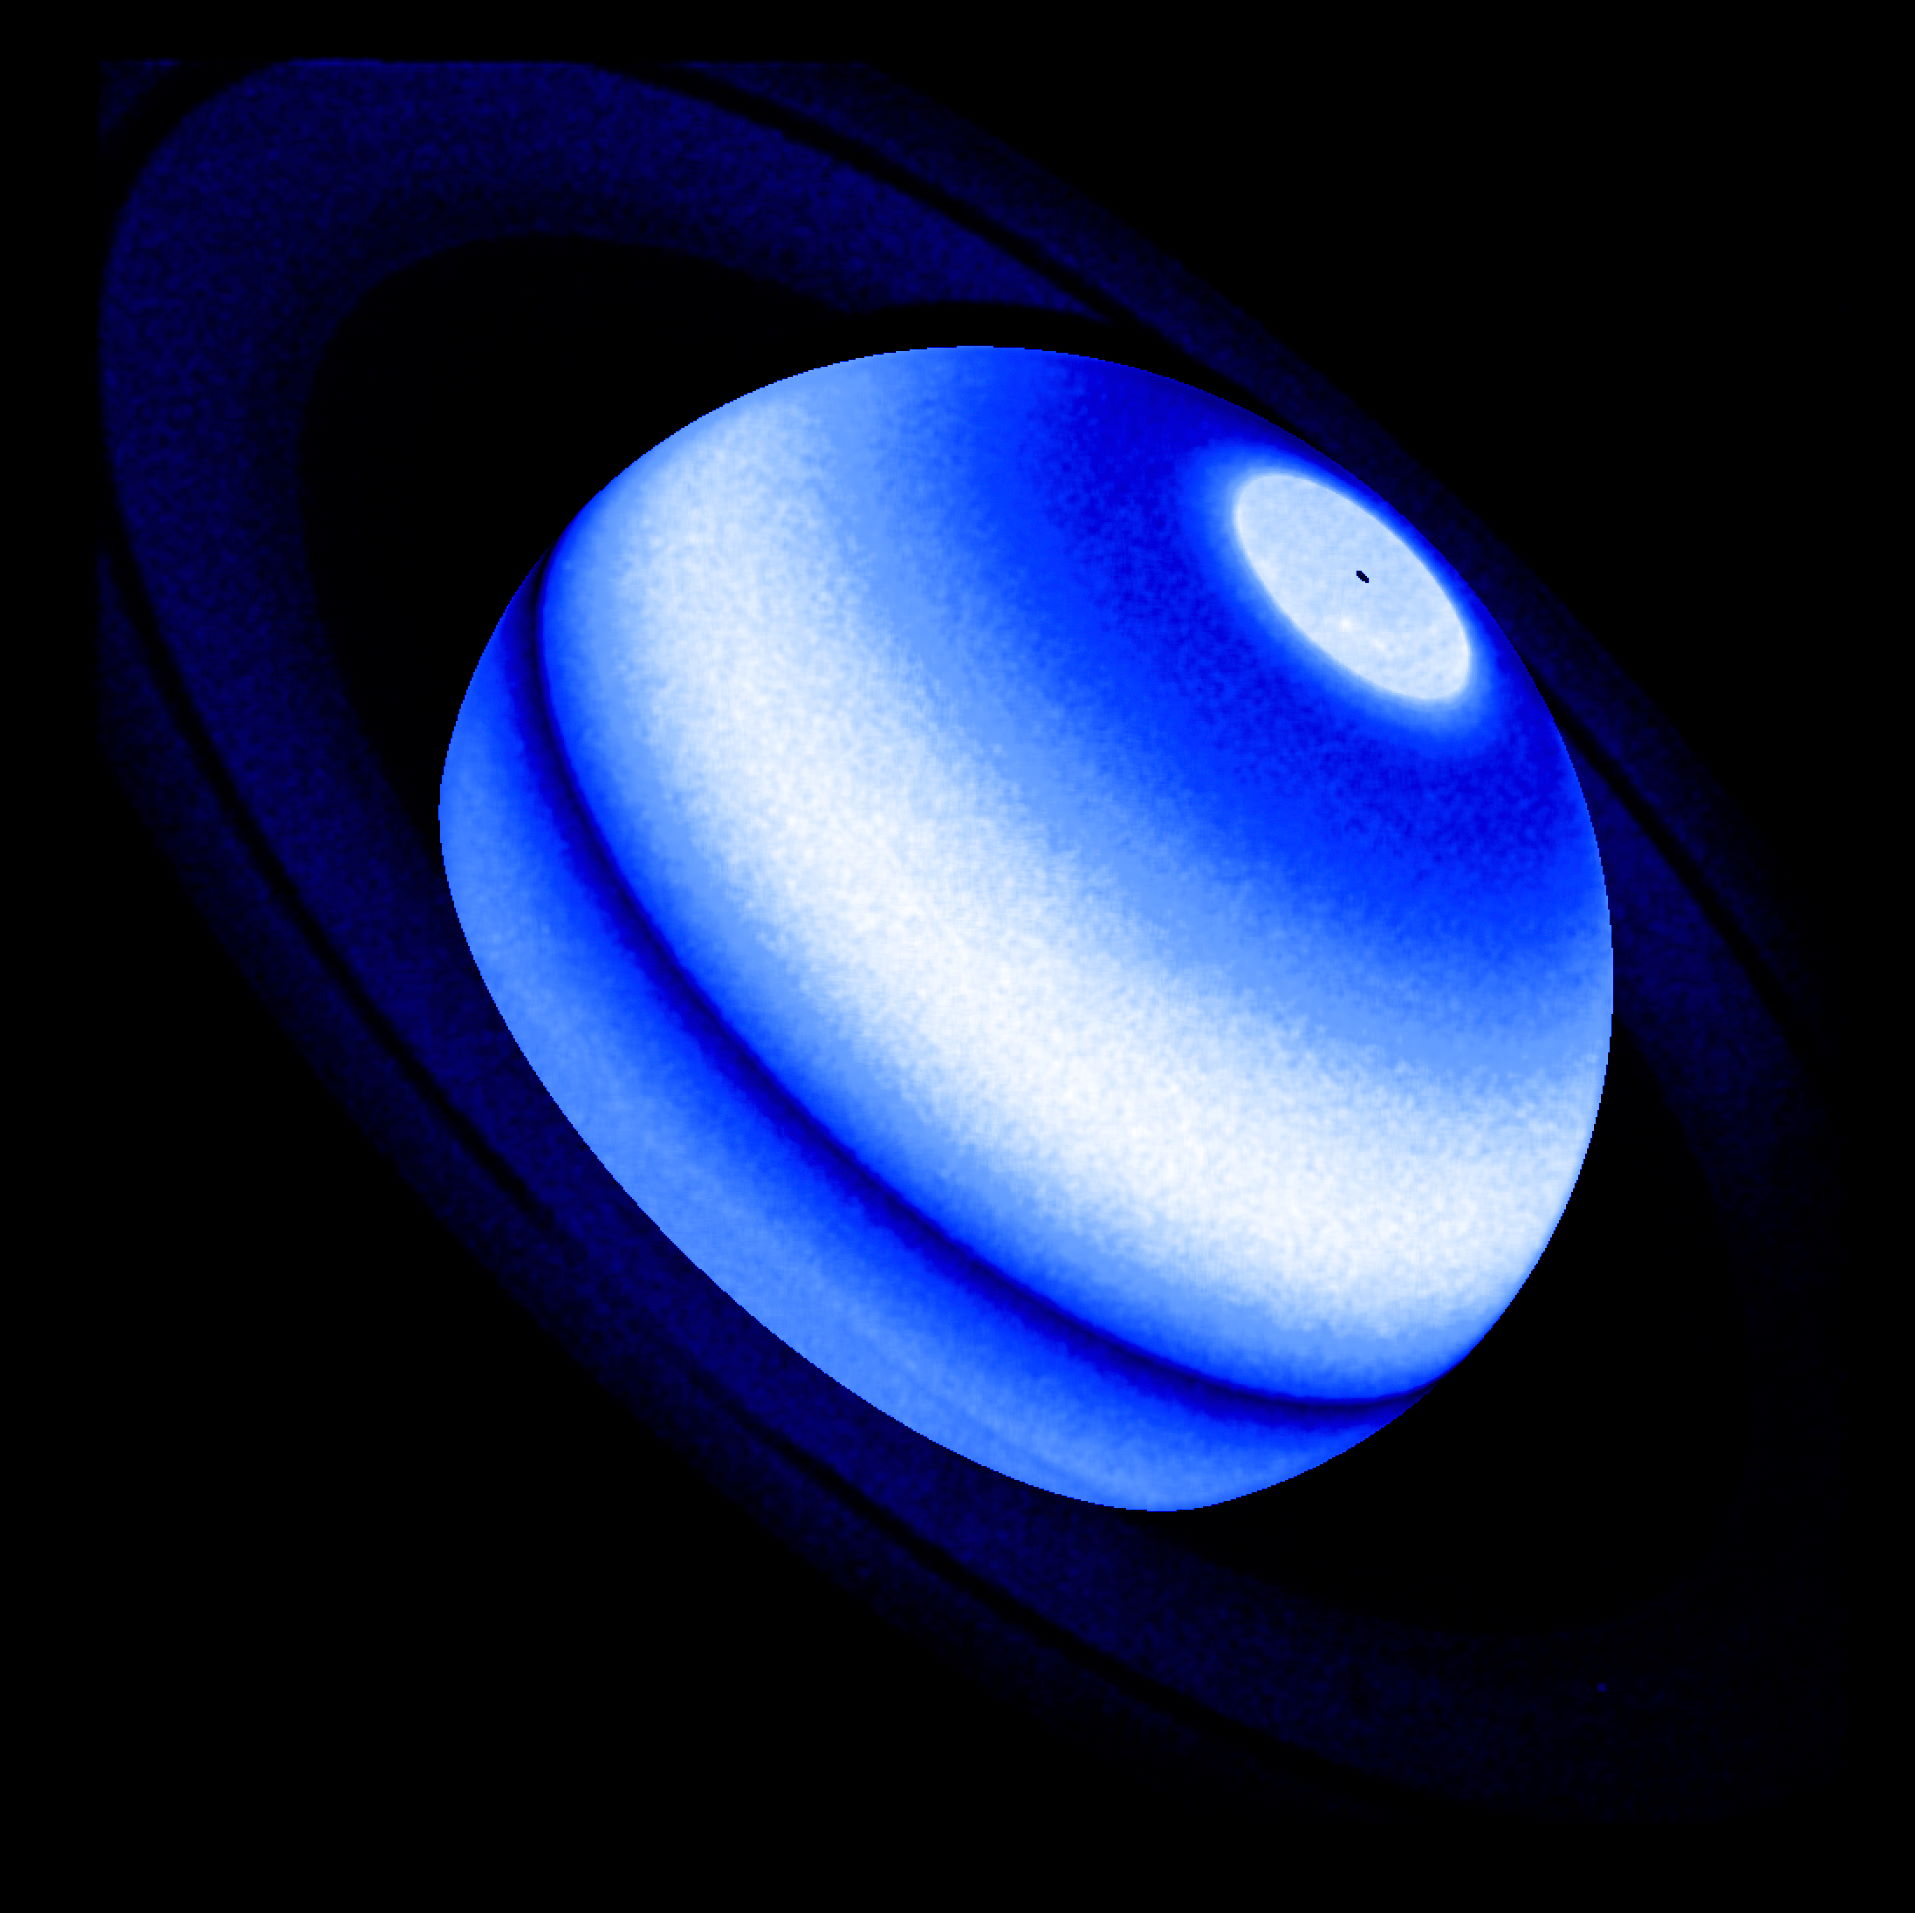 Композитне зображення Сатурна в ультрафіолетовому діапазоні, отримане з даних спостережень різних місій. NASA